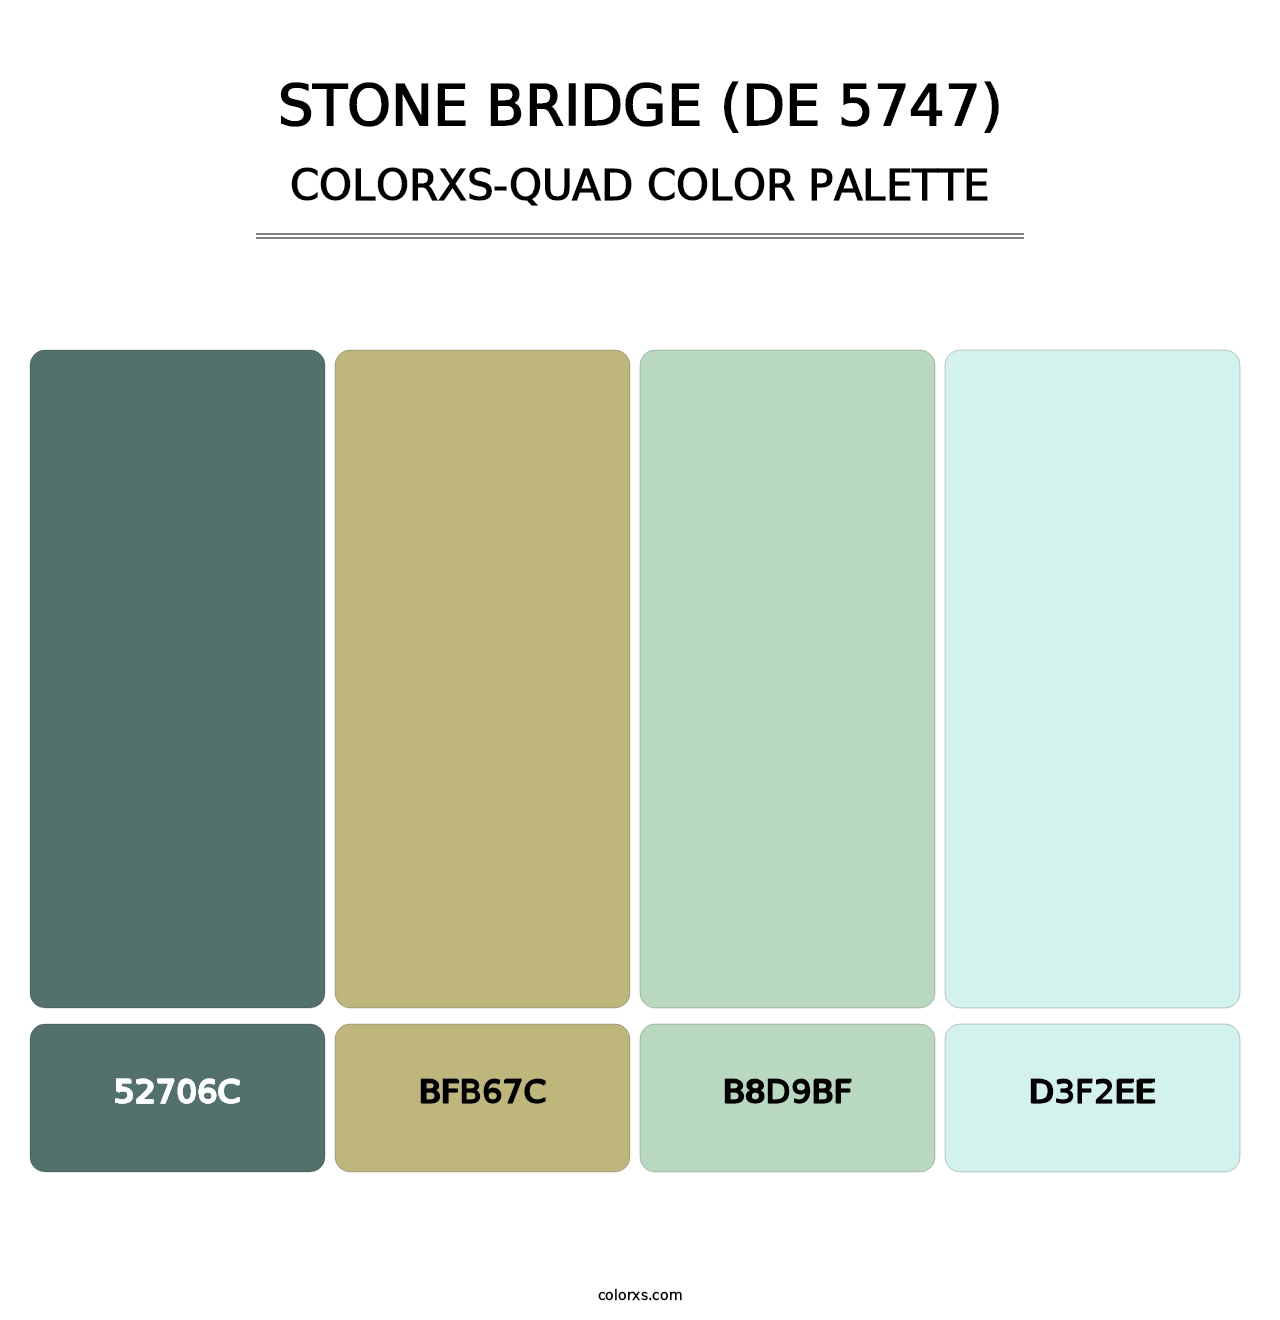 Stone Bridge (DE 5747) - Colorxs Quad Palette